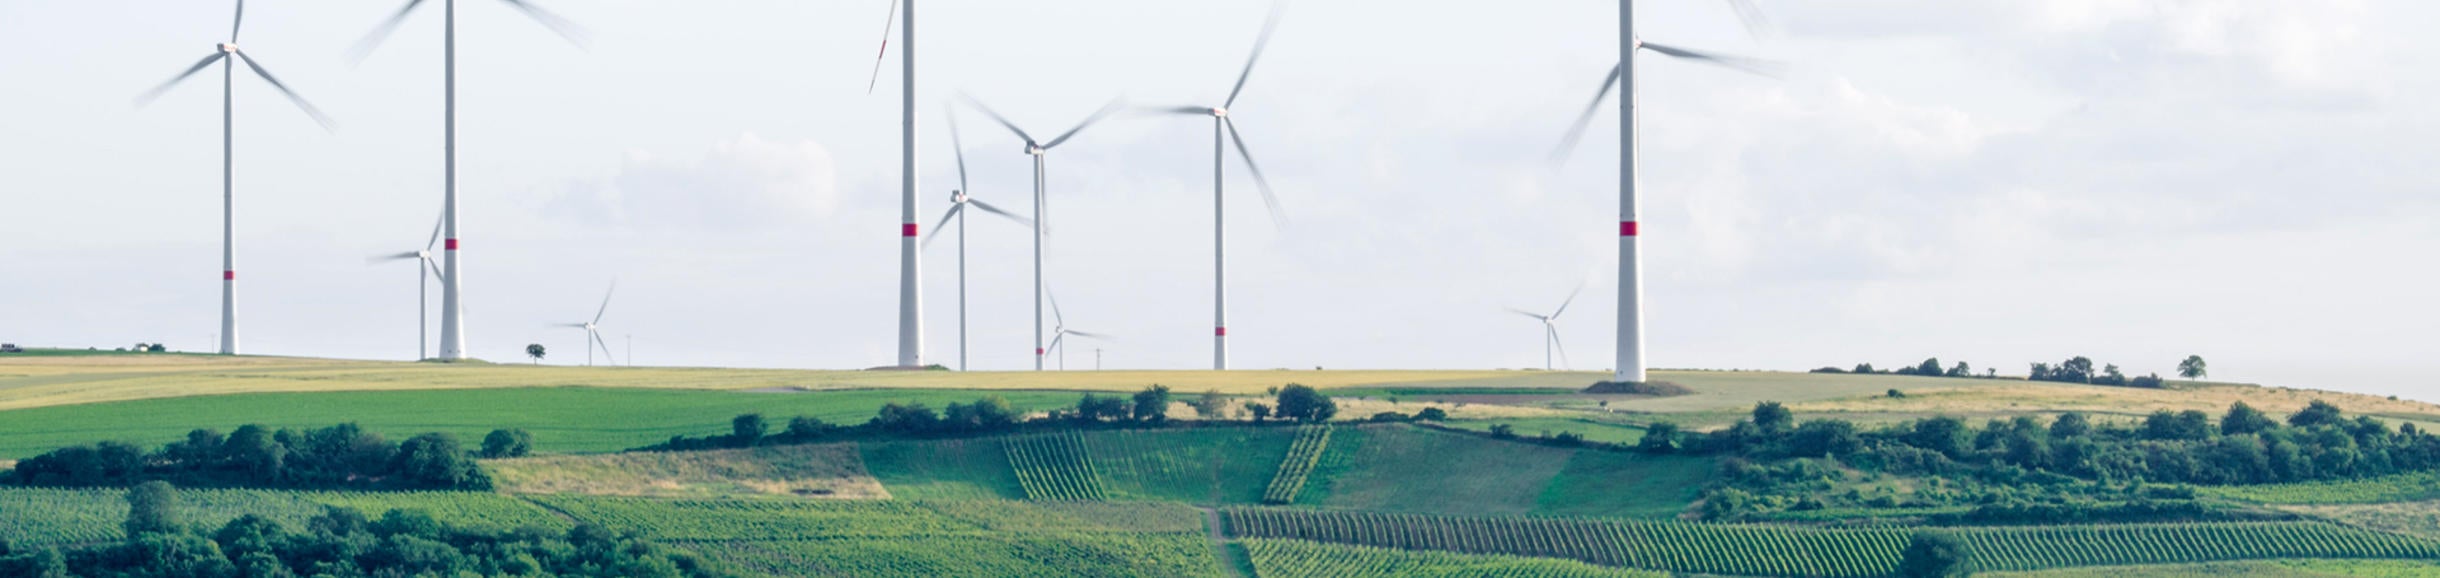 wind turbines in a field (c) Karsten Wurth unsplash